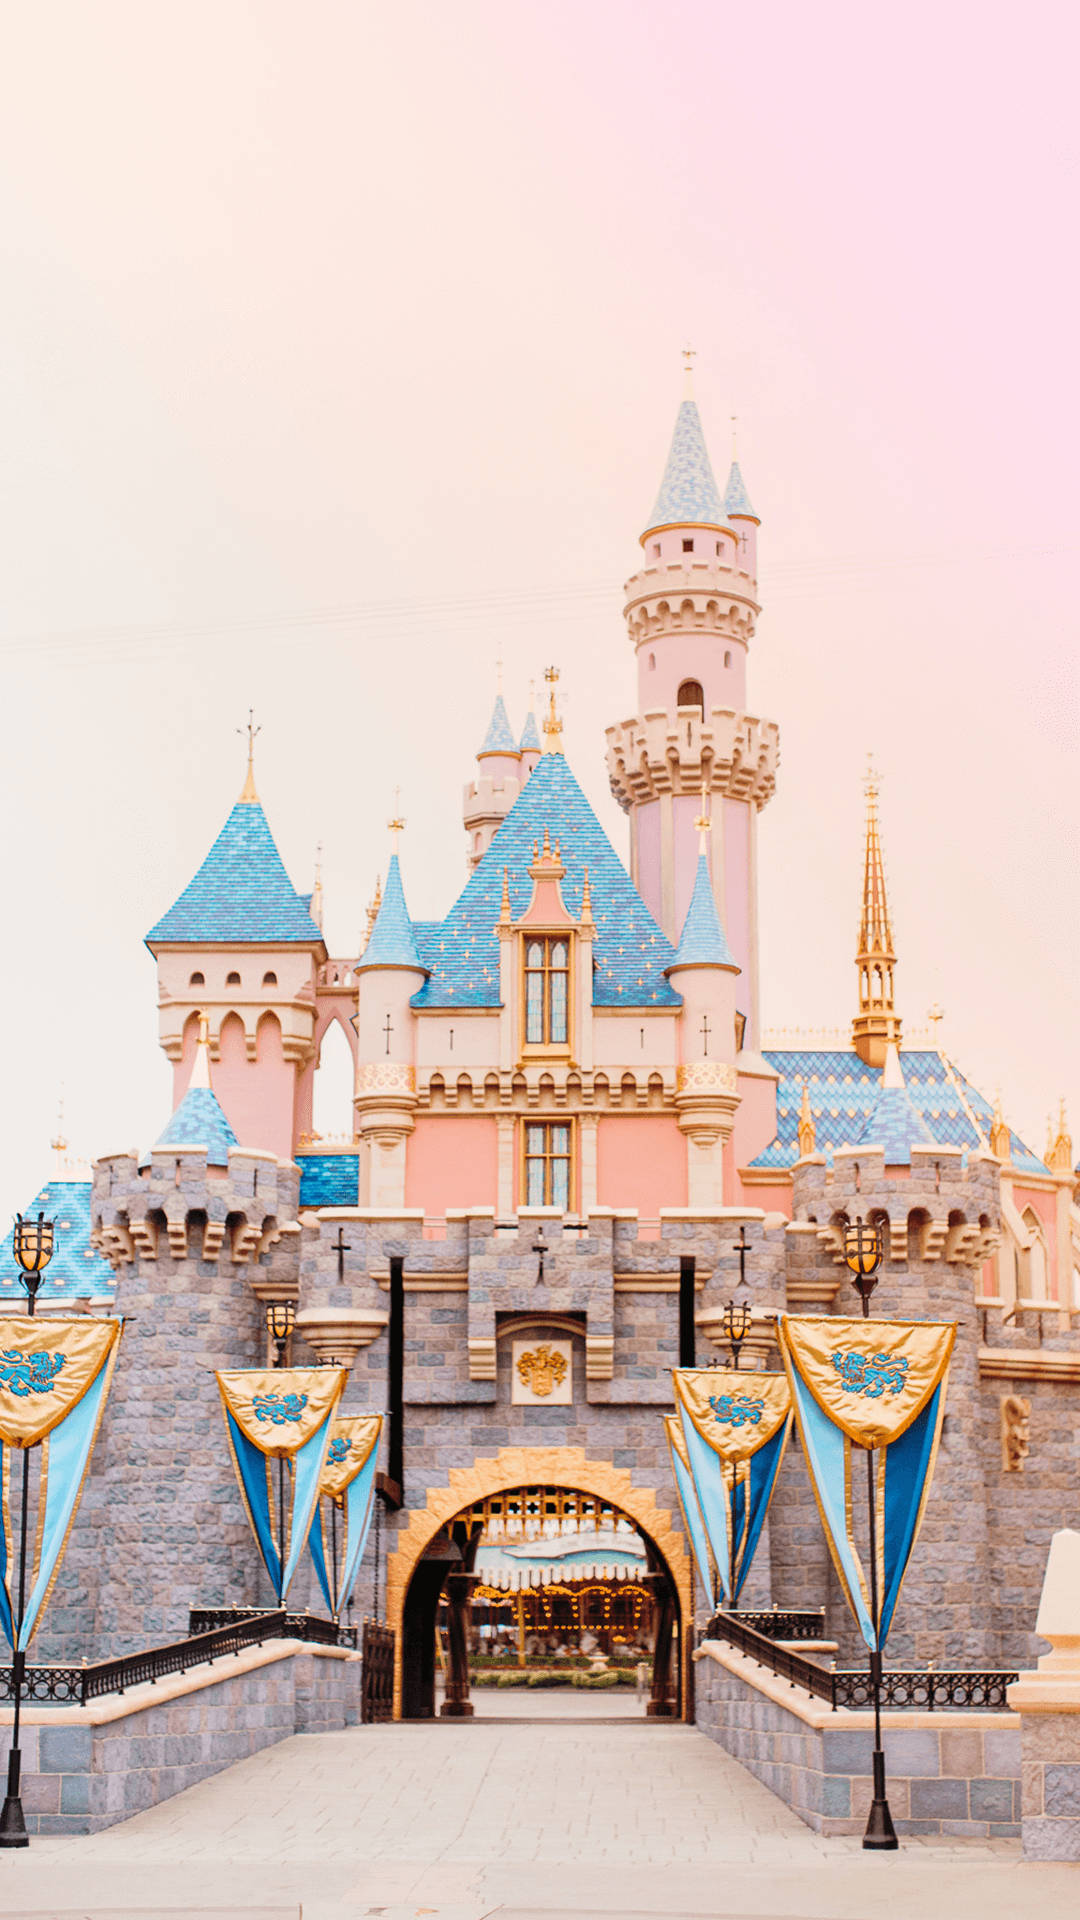 Download Peach-colored Disney Castle Wallpaper 